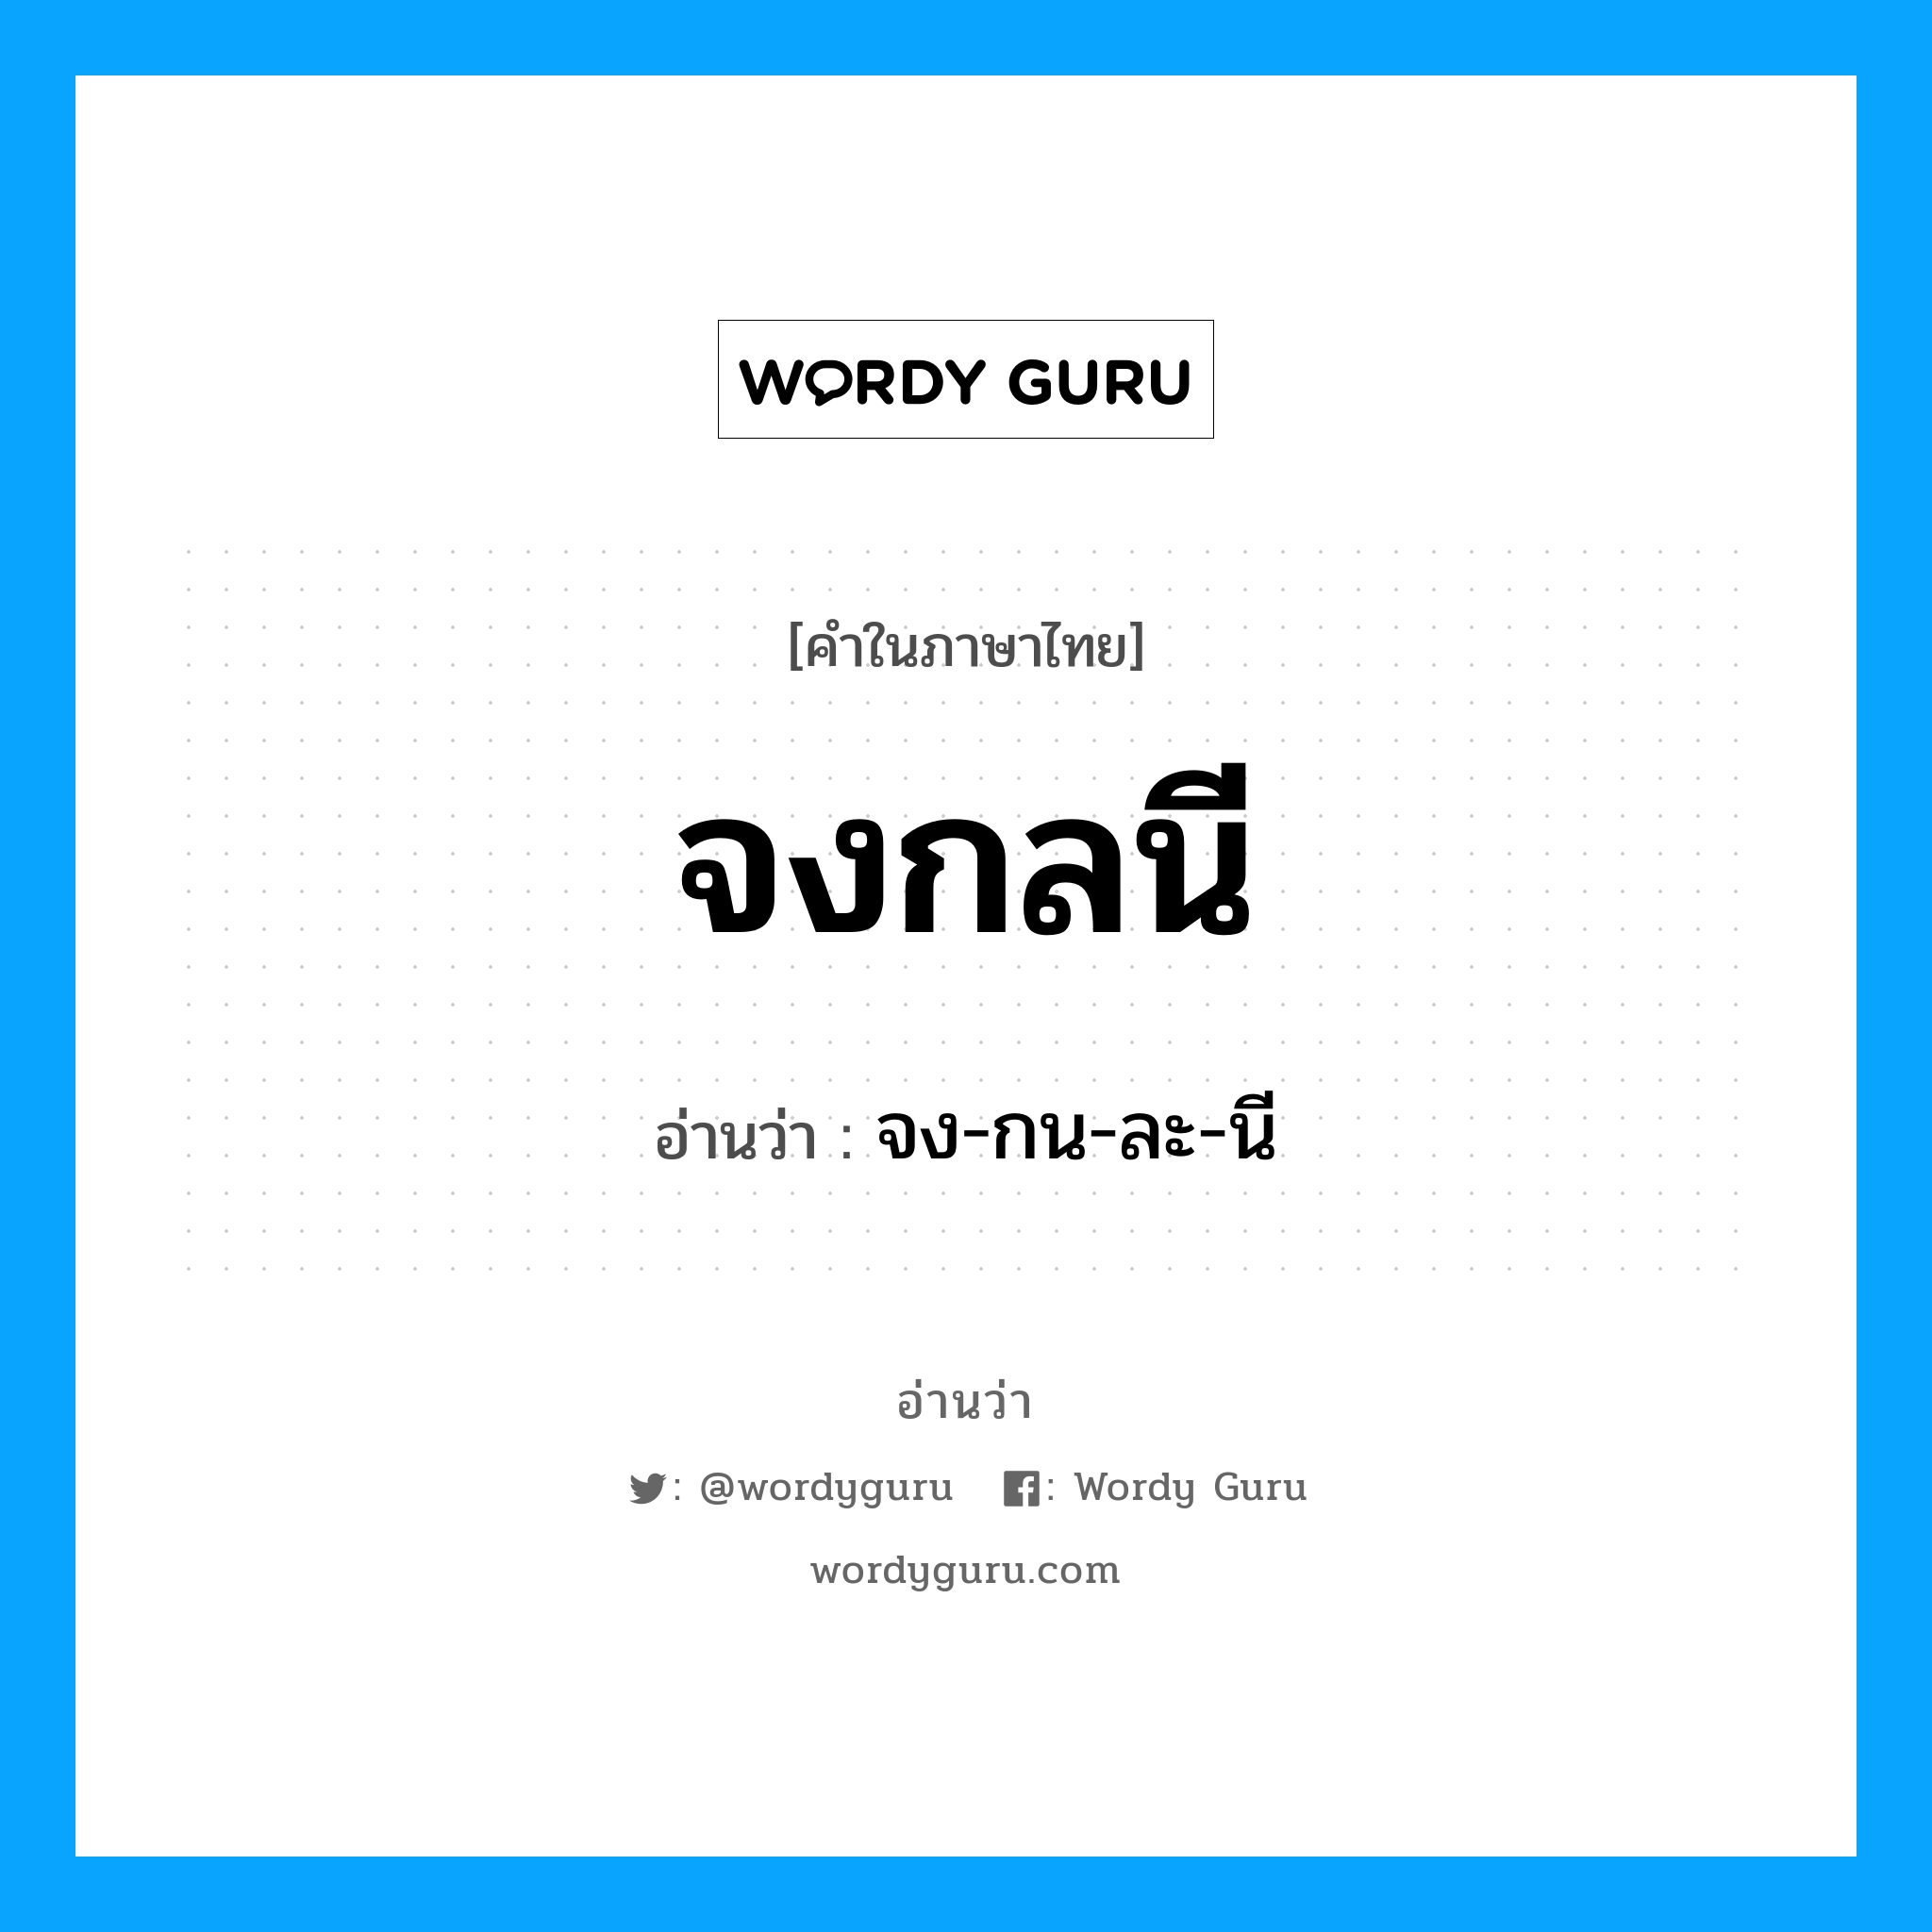 จง-กน-ละ-นี เป็นคำอ่านของคำไหน?, คำในภาษาไทย จง-กน-ละ-นี อ่านว่า จงกลนี